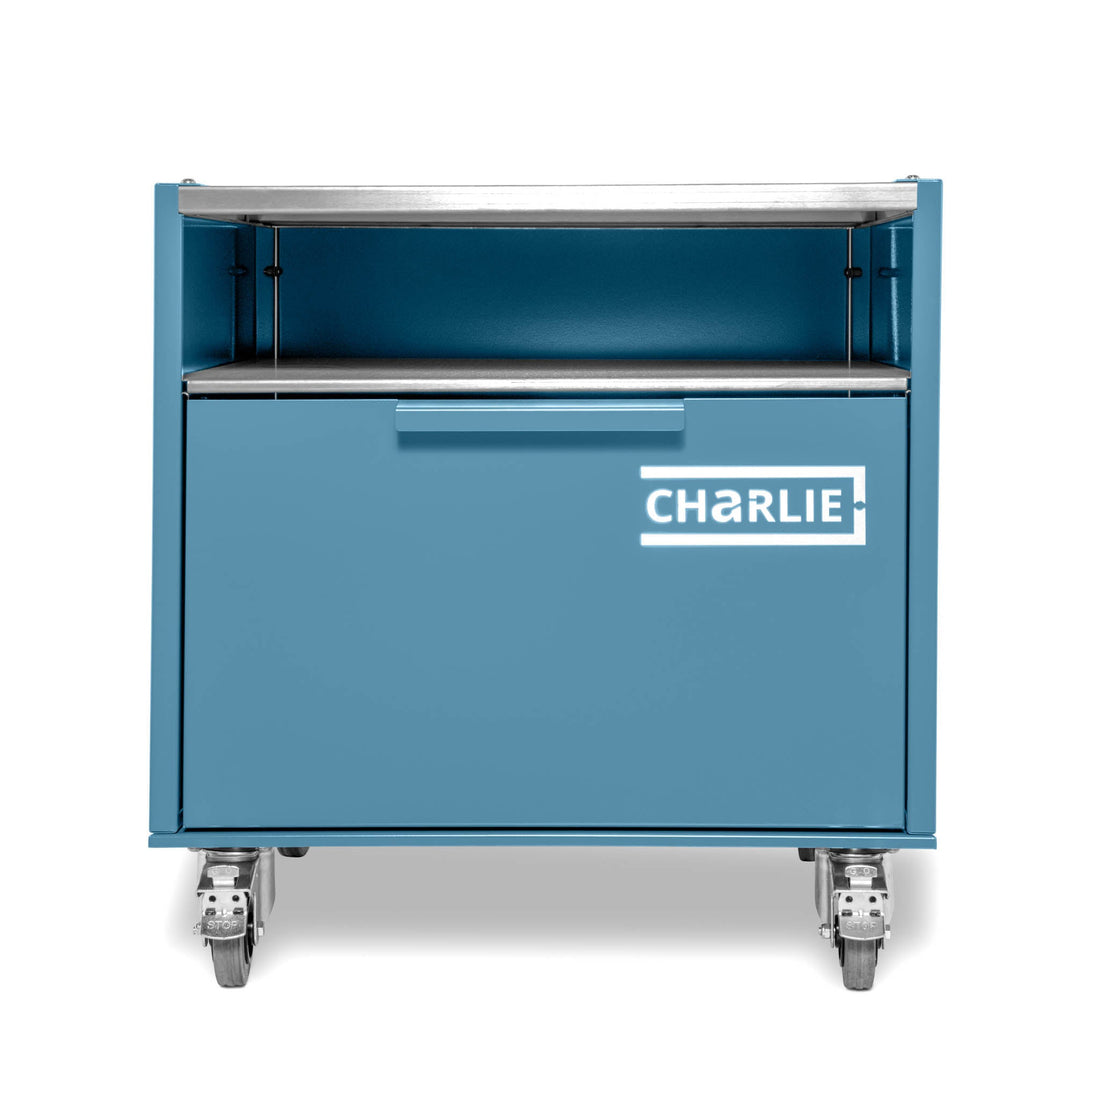 Charlie Base Cabinet - Blue Marlin - Charlie Oven